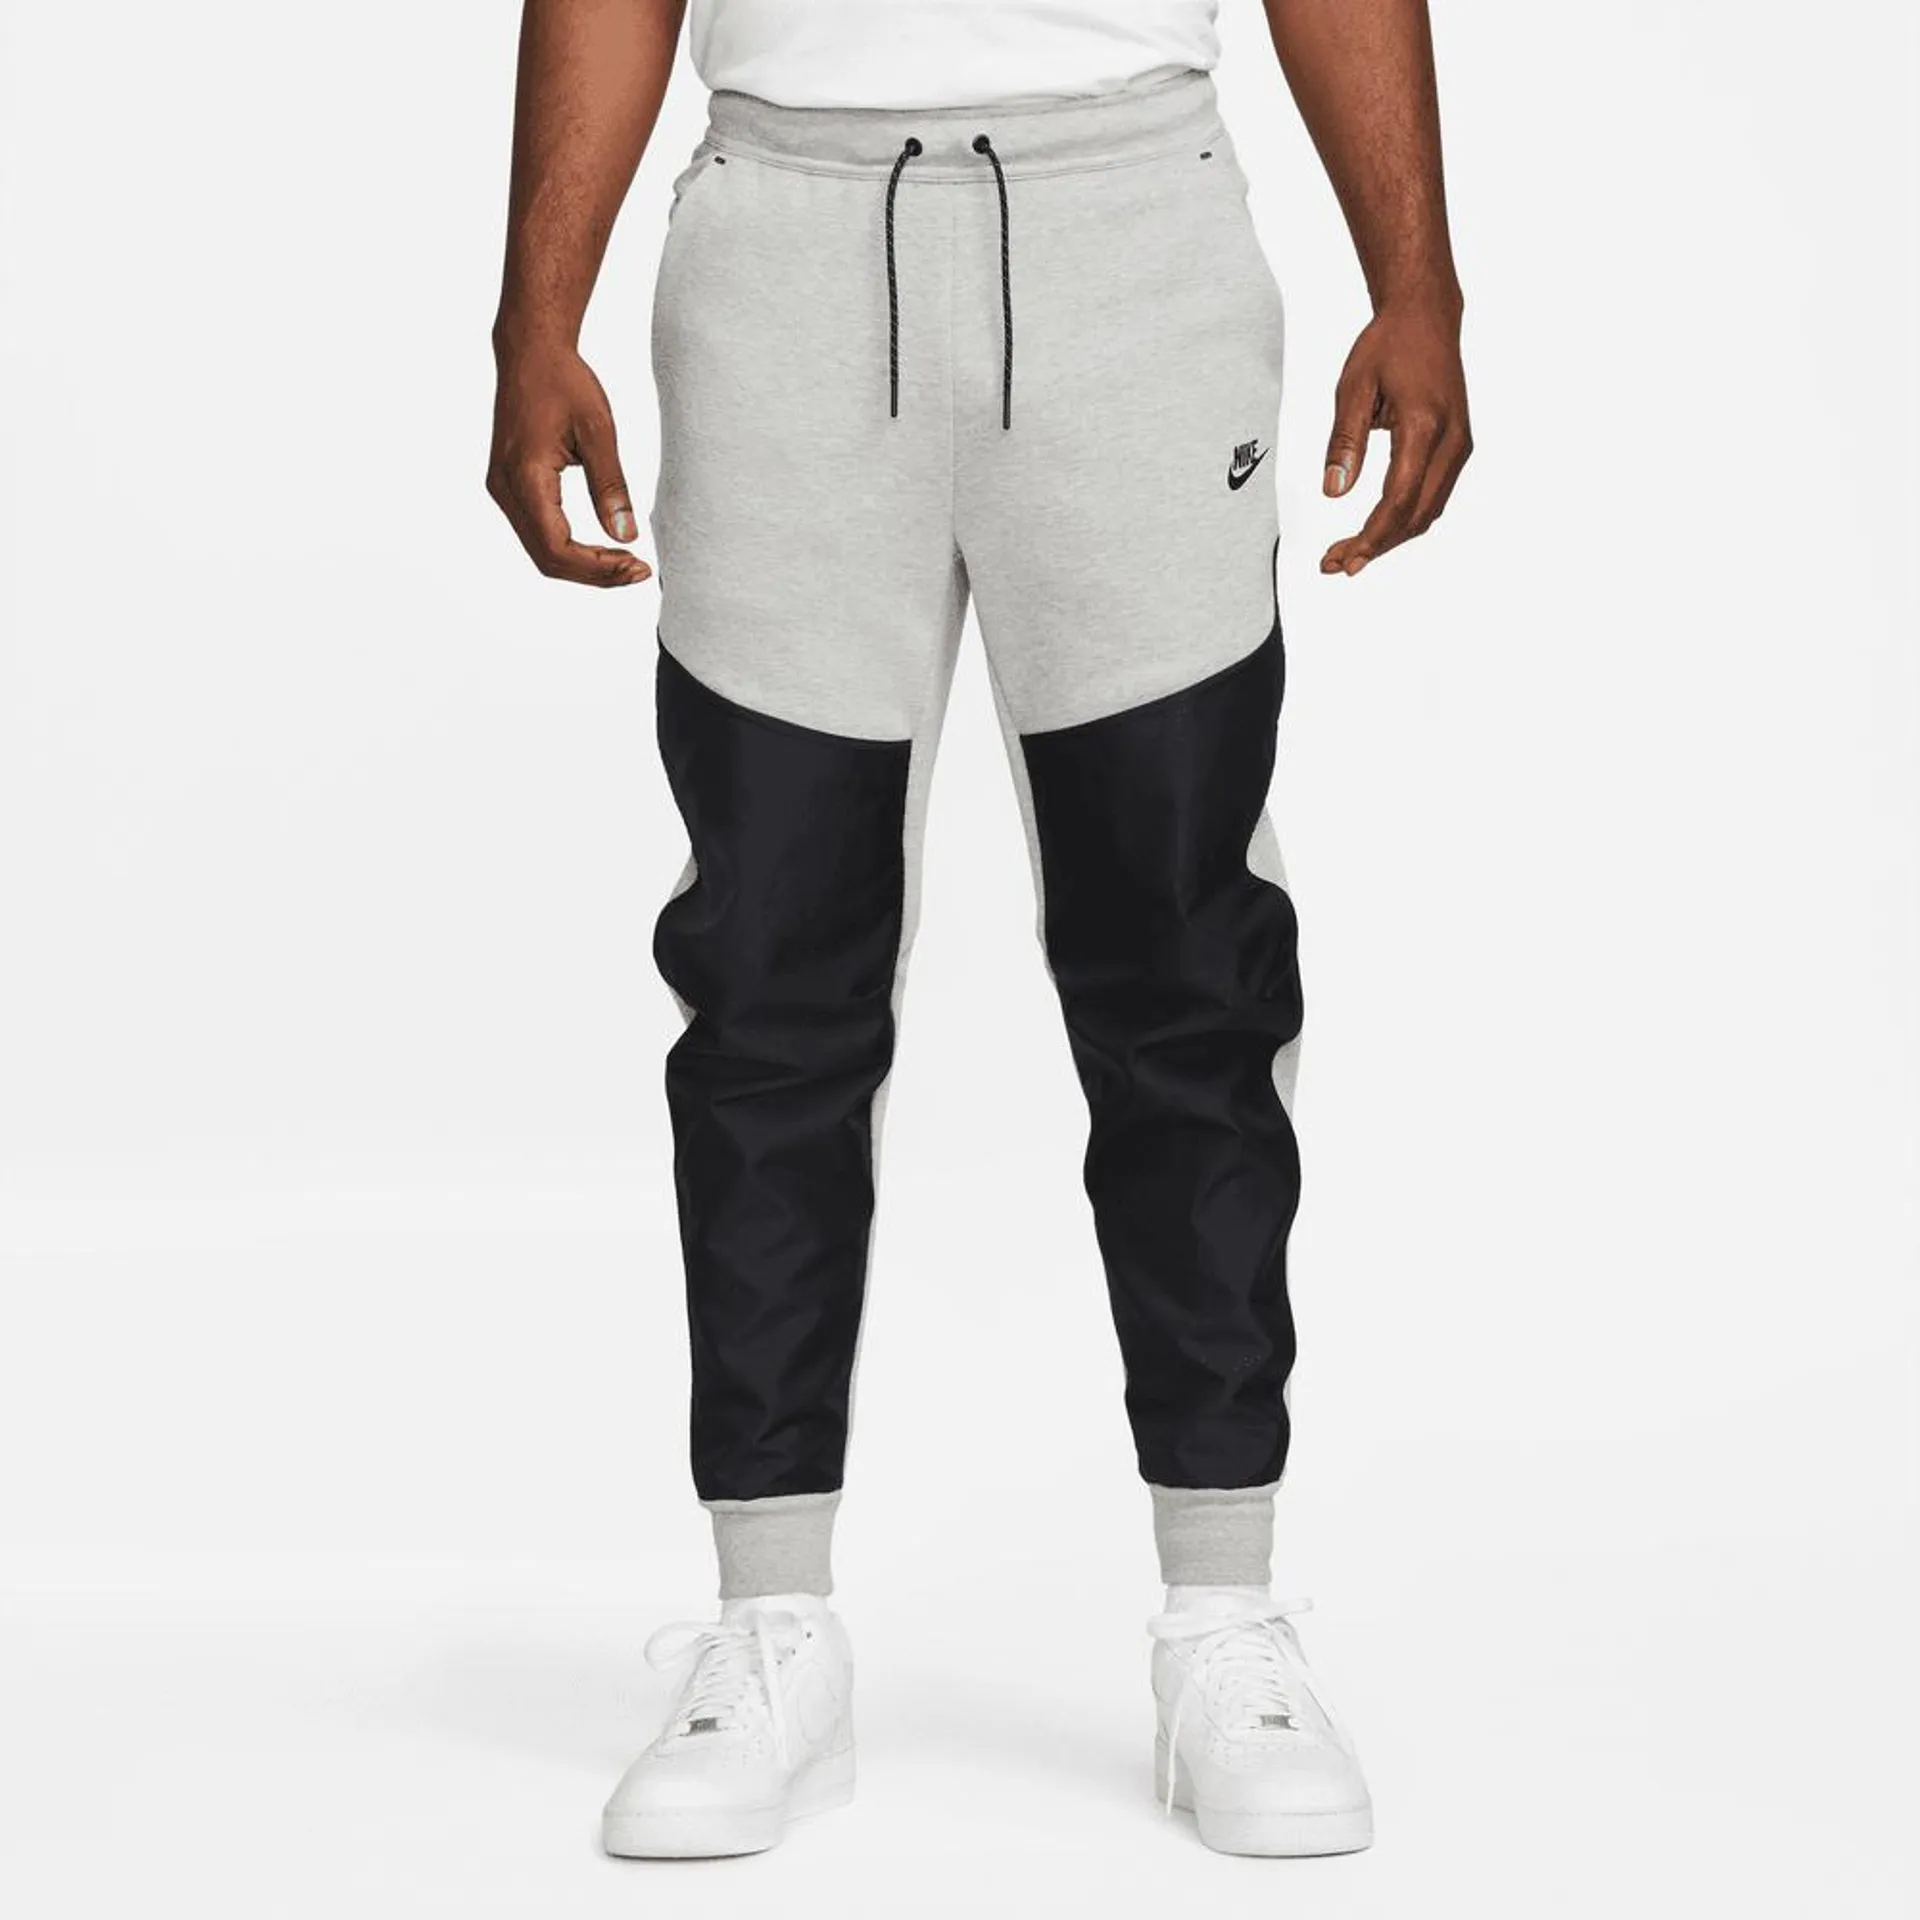 Pantalon jogging Nike Tech Fleece - Gris/Noir